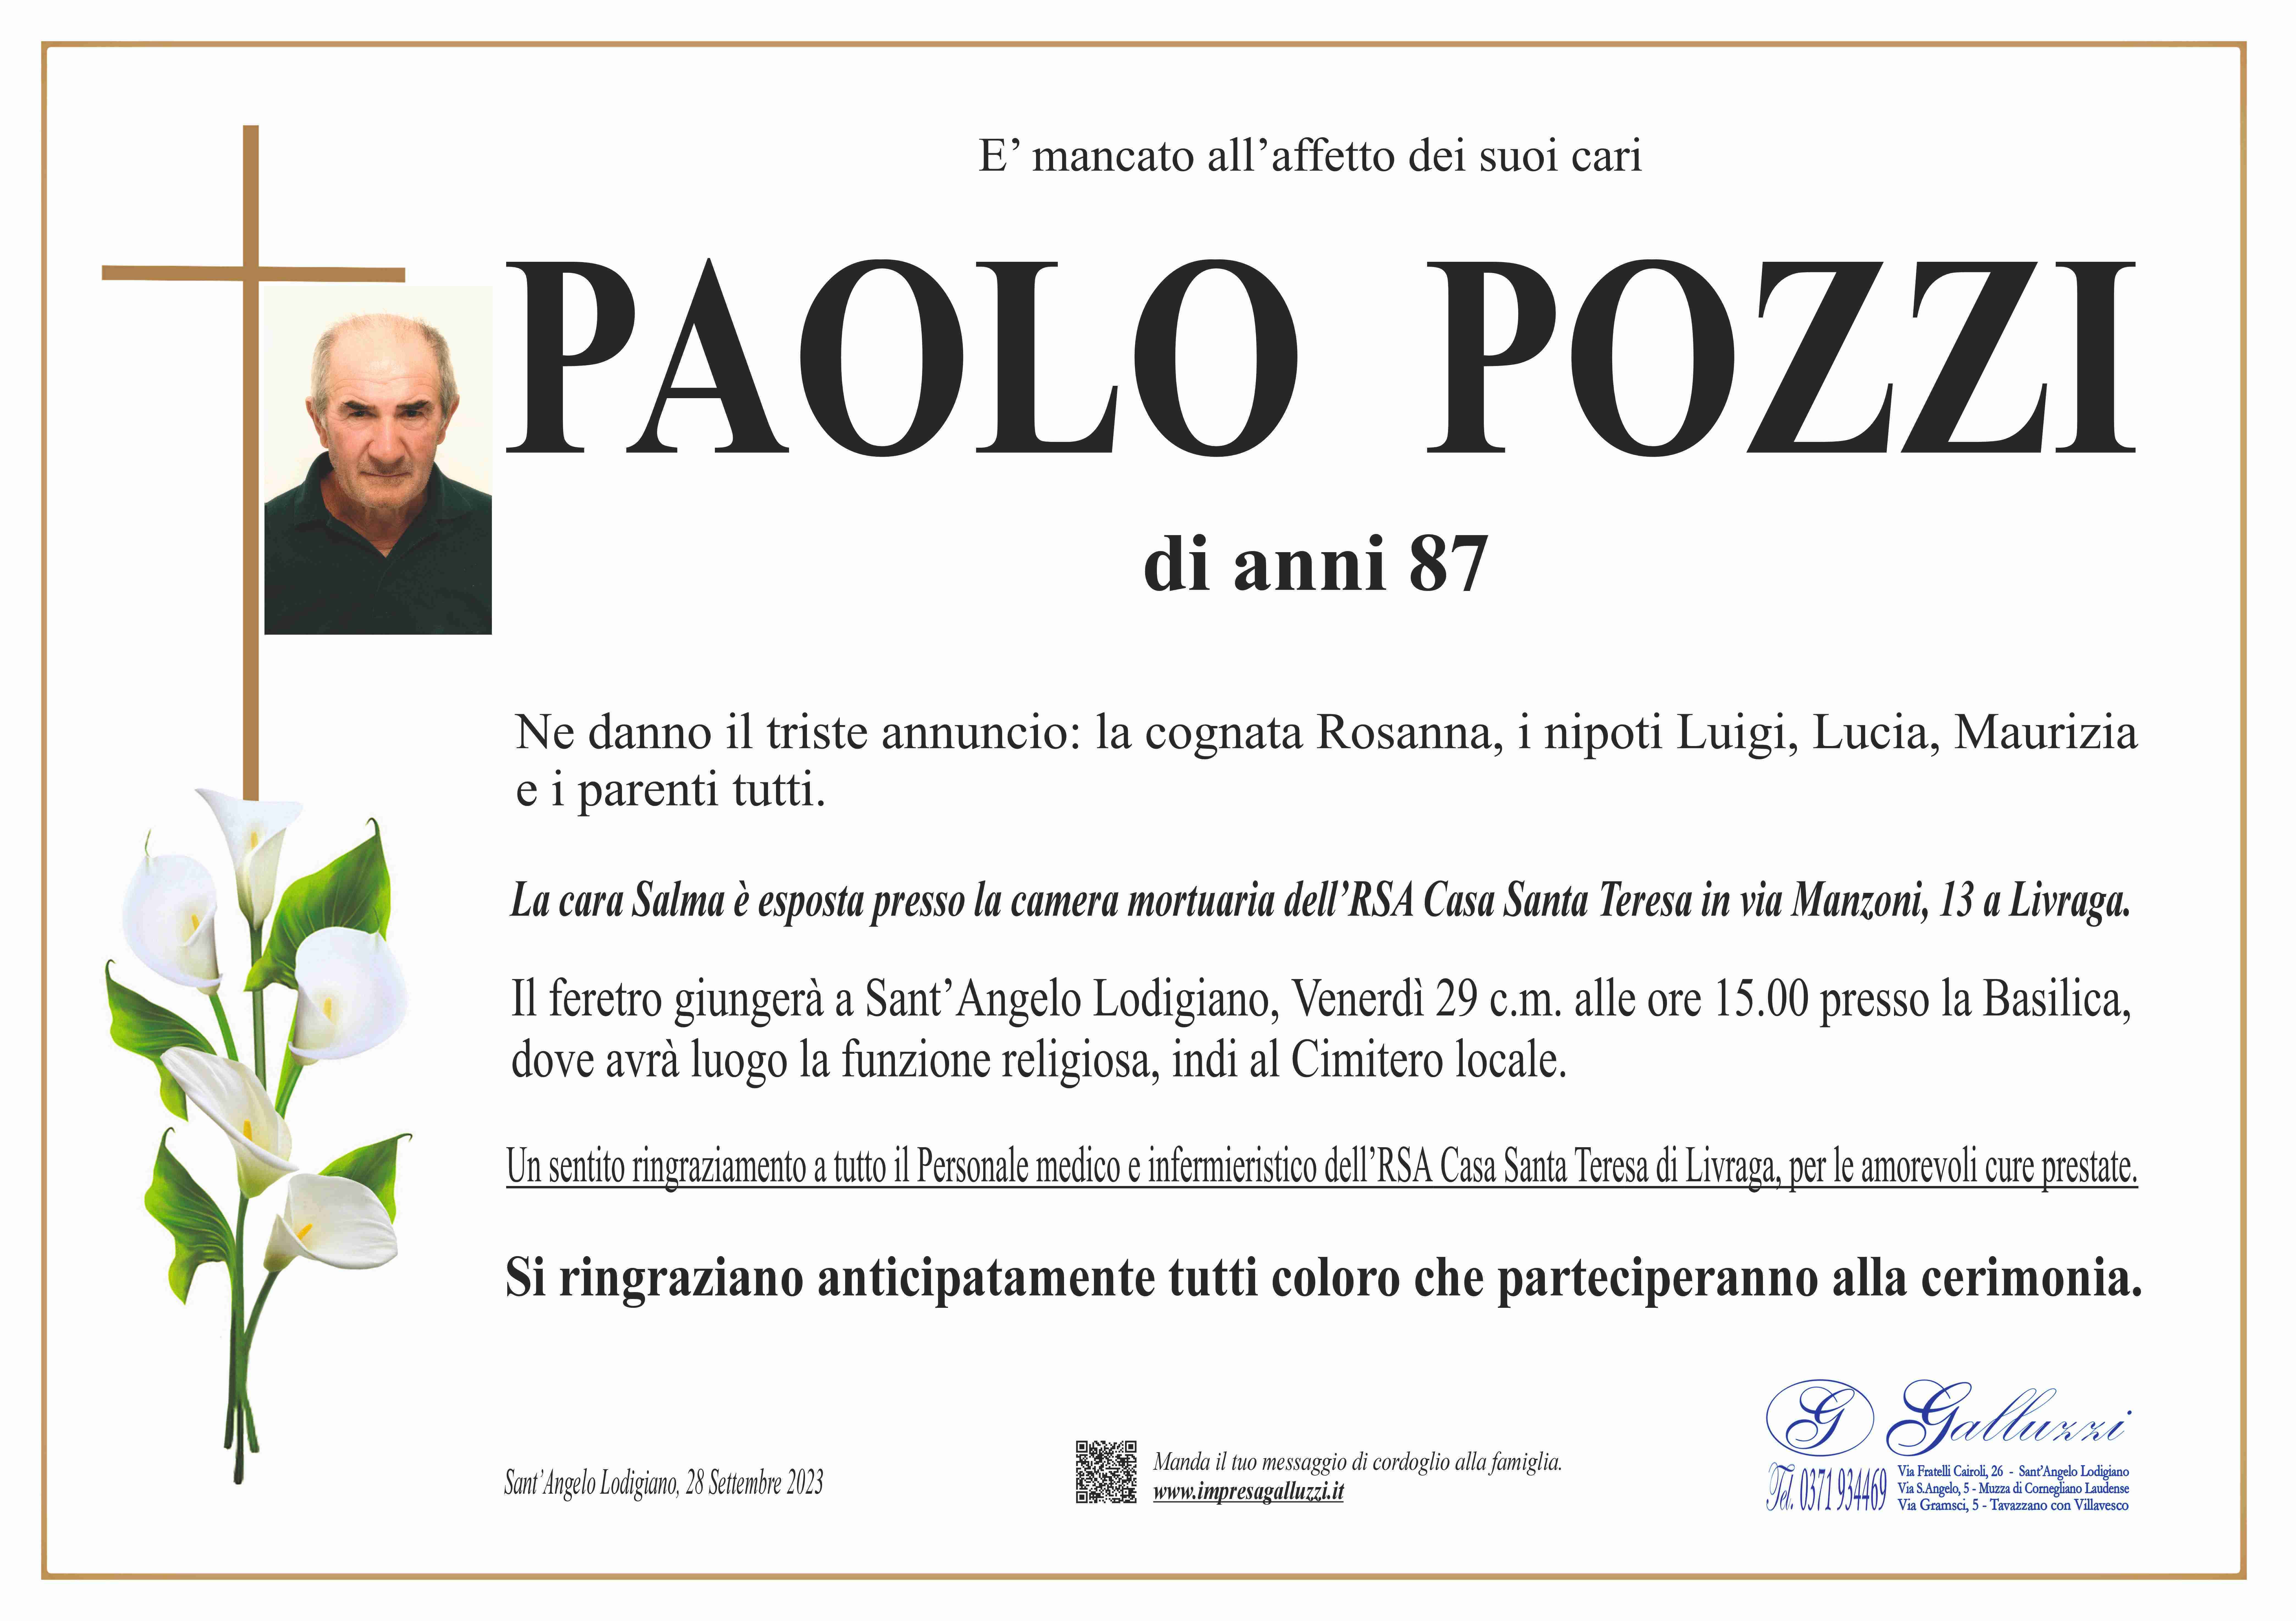 Paolo Pozzi